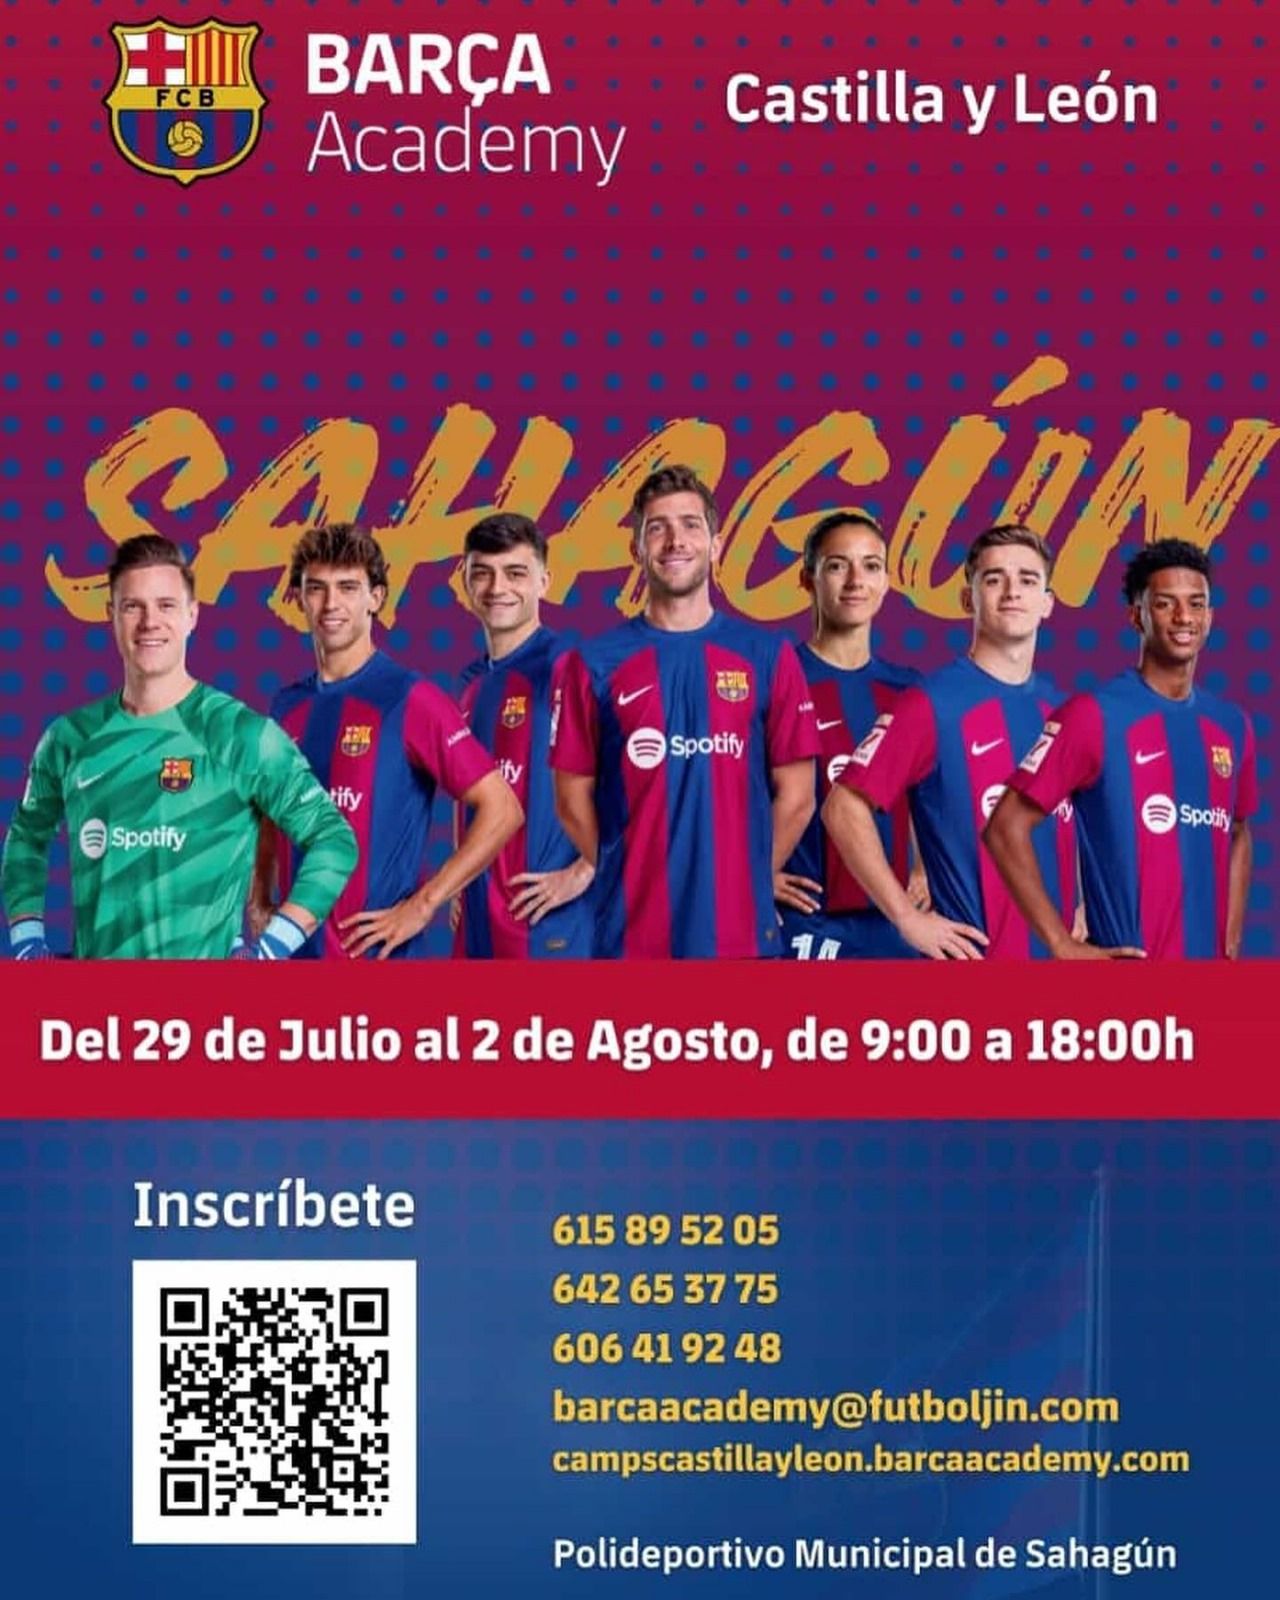 Imagen promocional del Barça Academy.